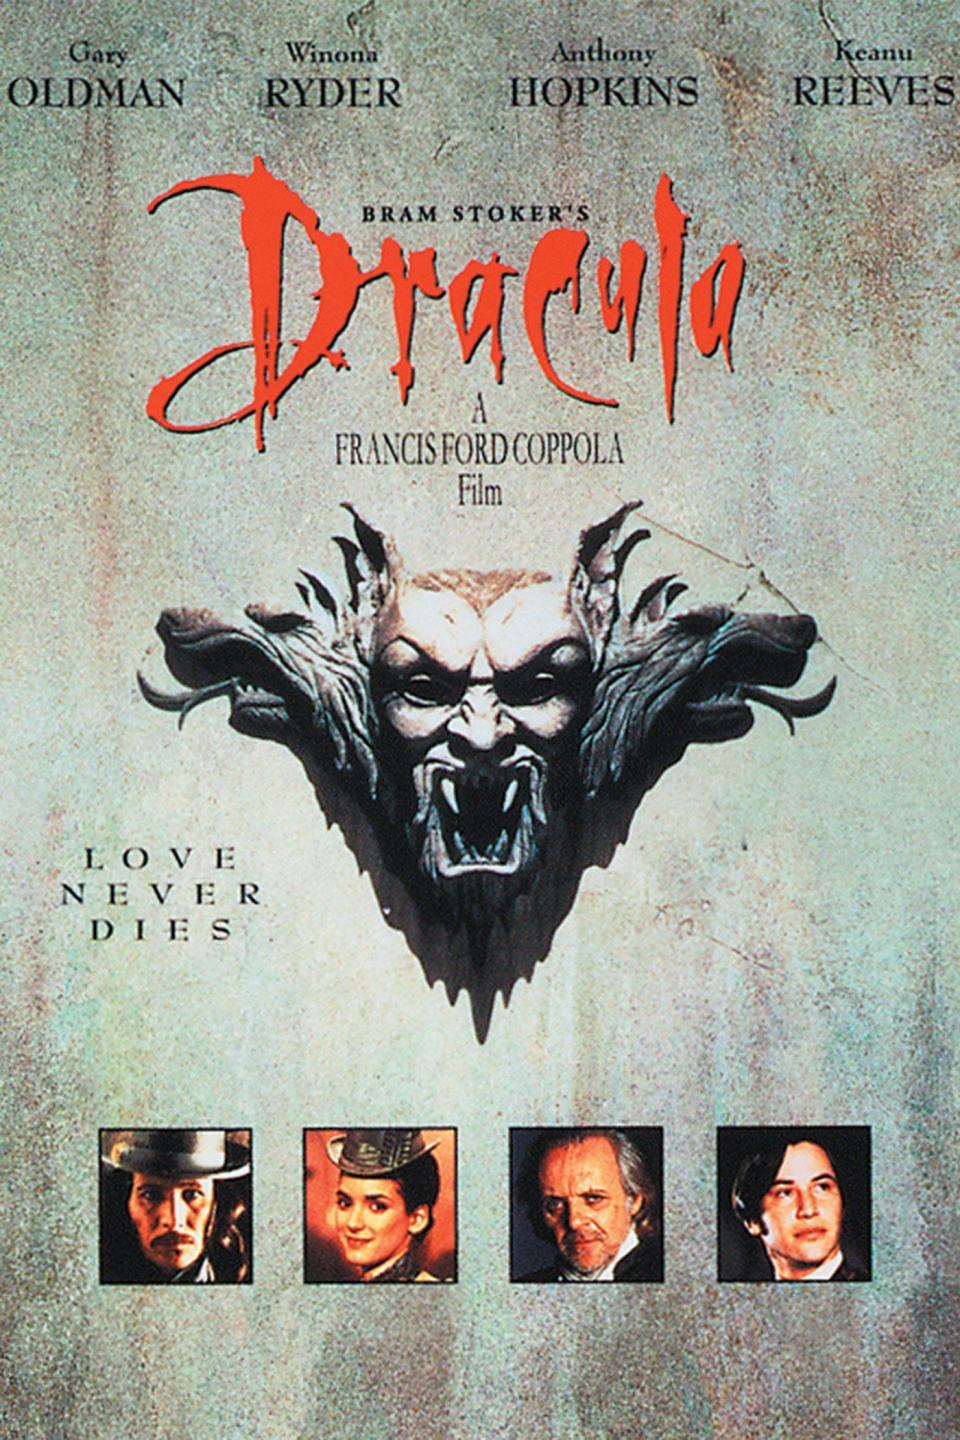 8) Bram Stoker's Dracula (1992)